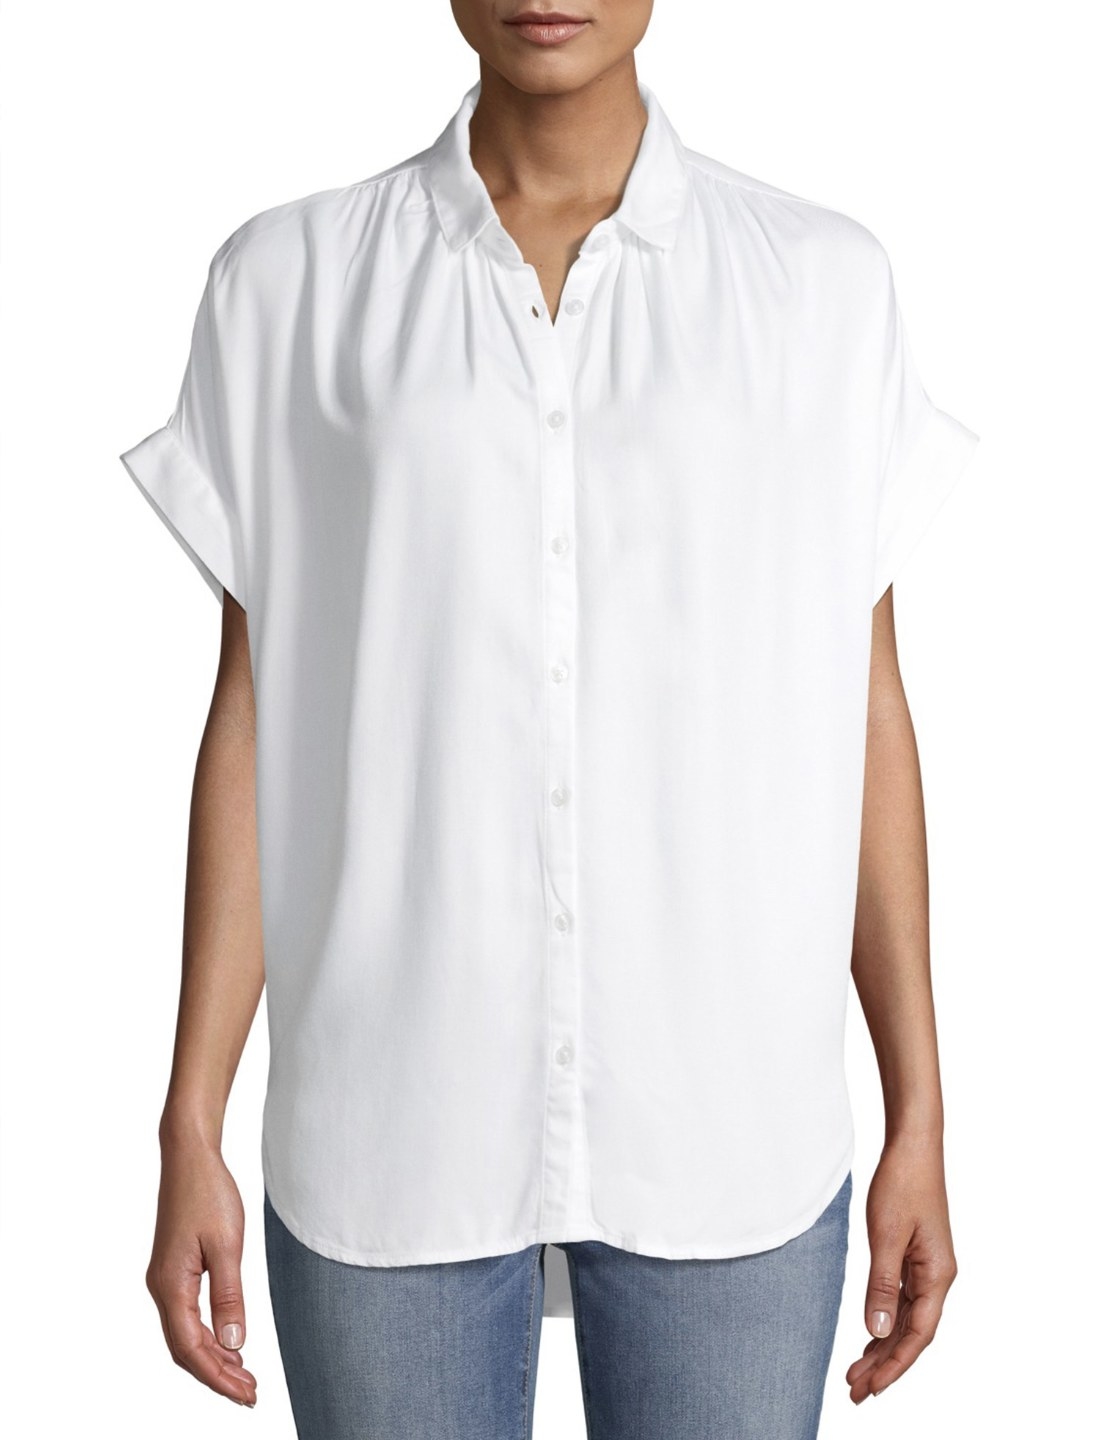 Model in the sleeveless white blouse